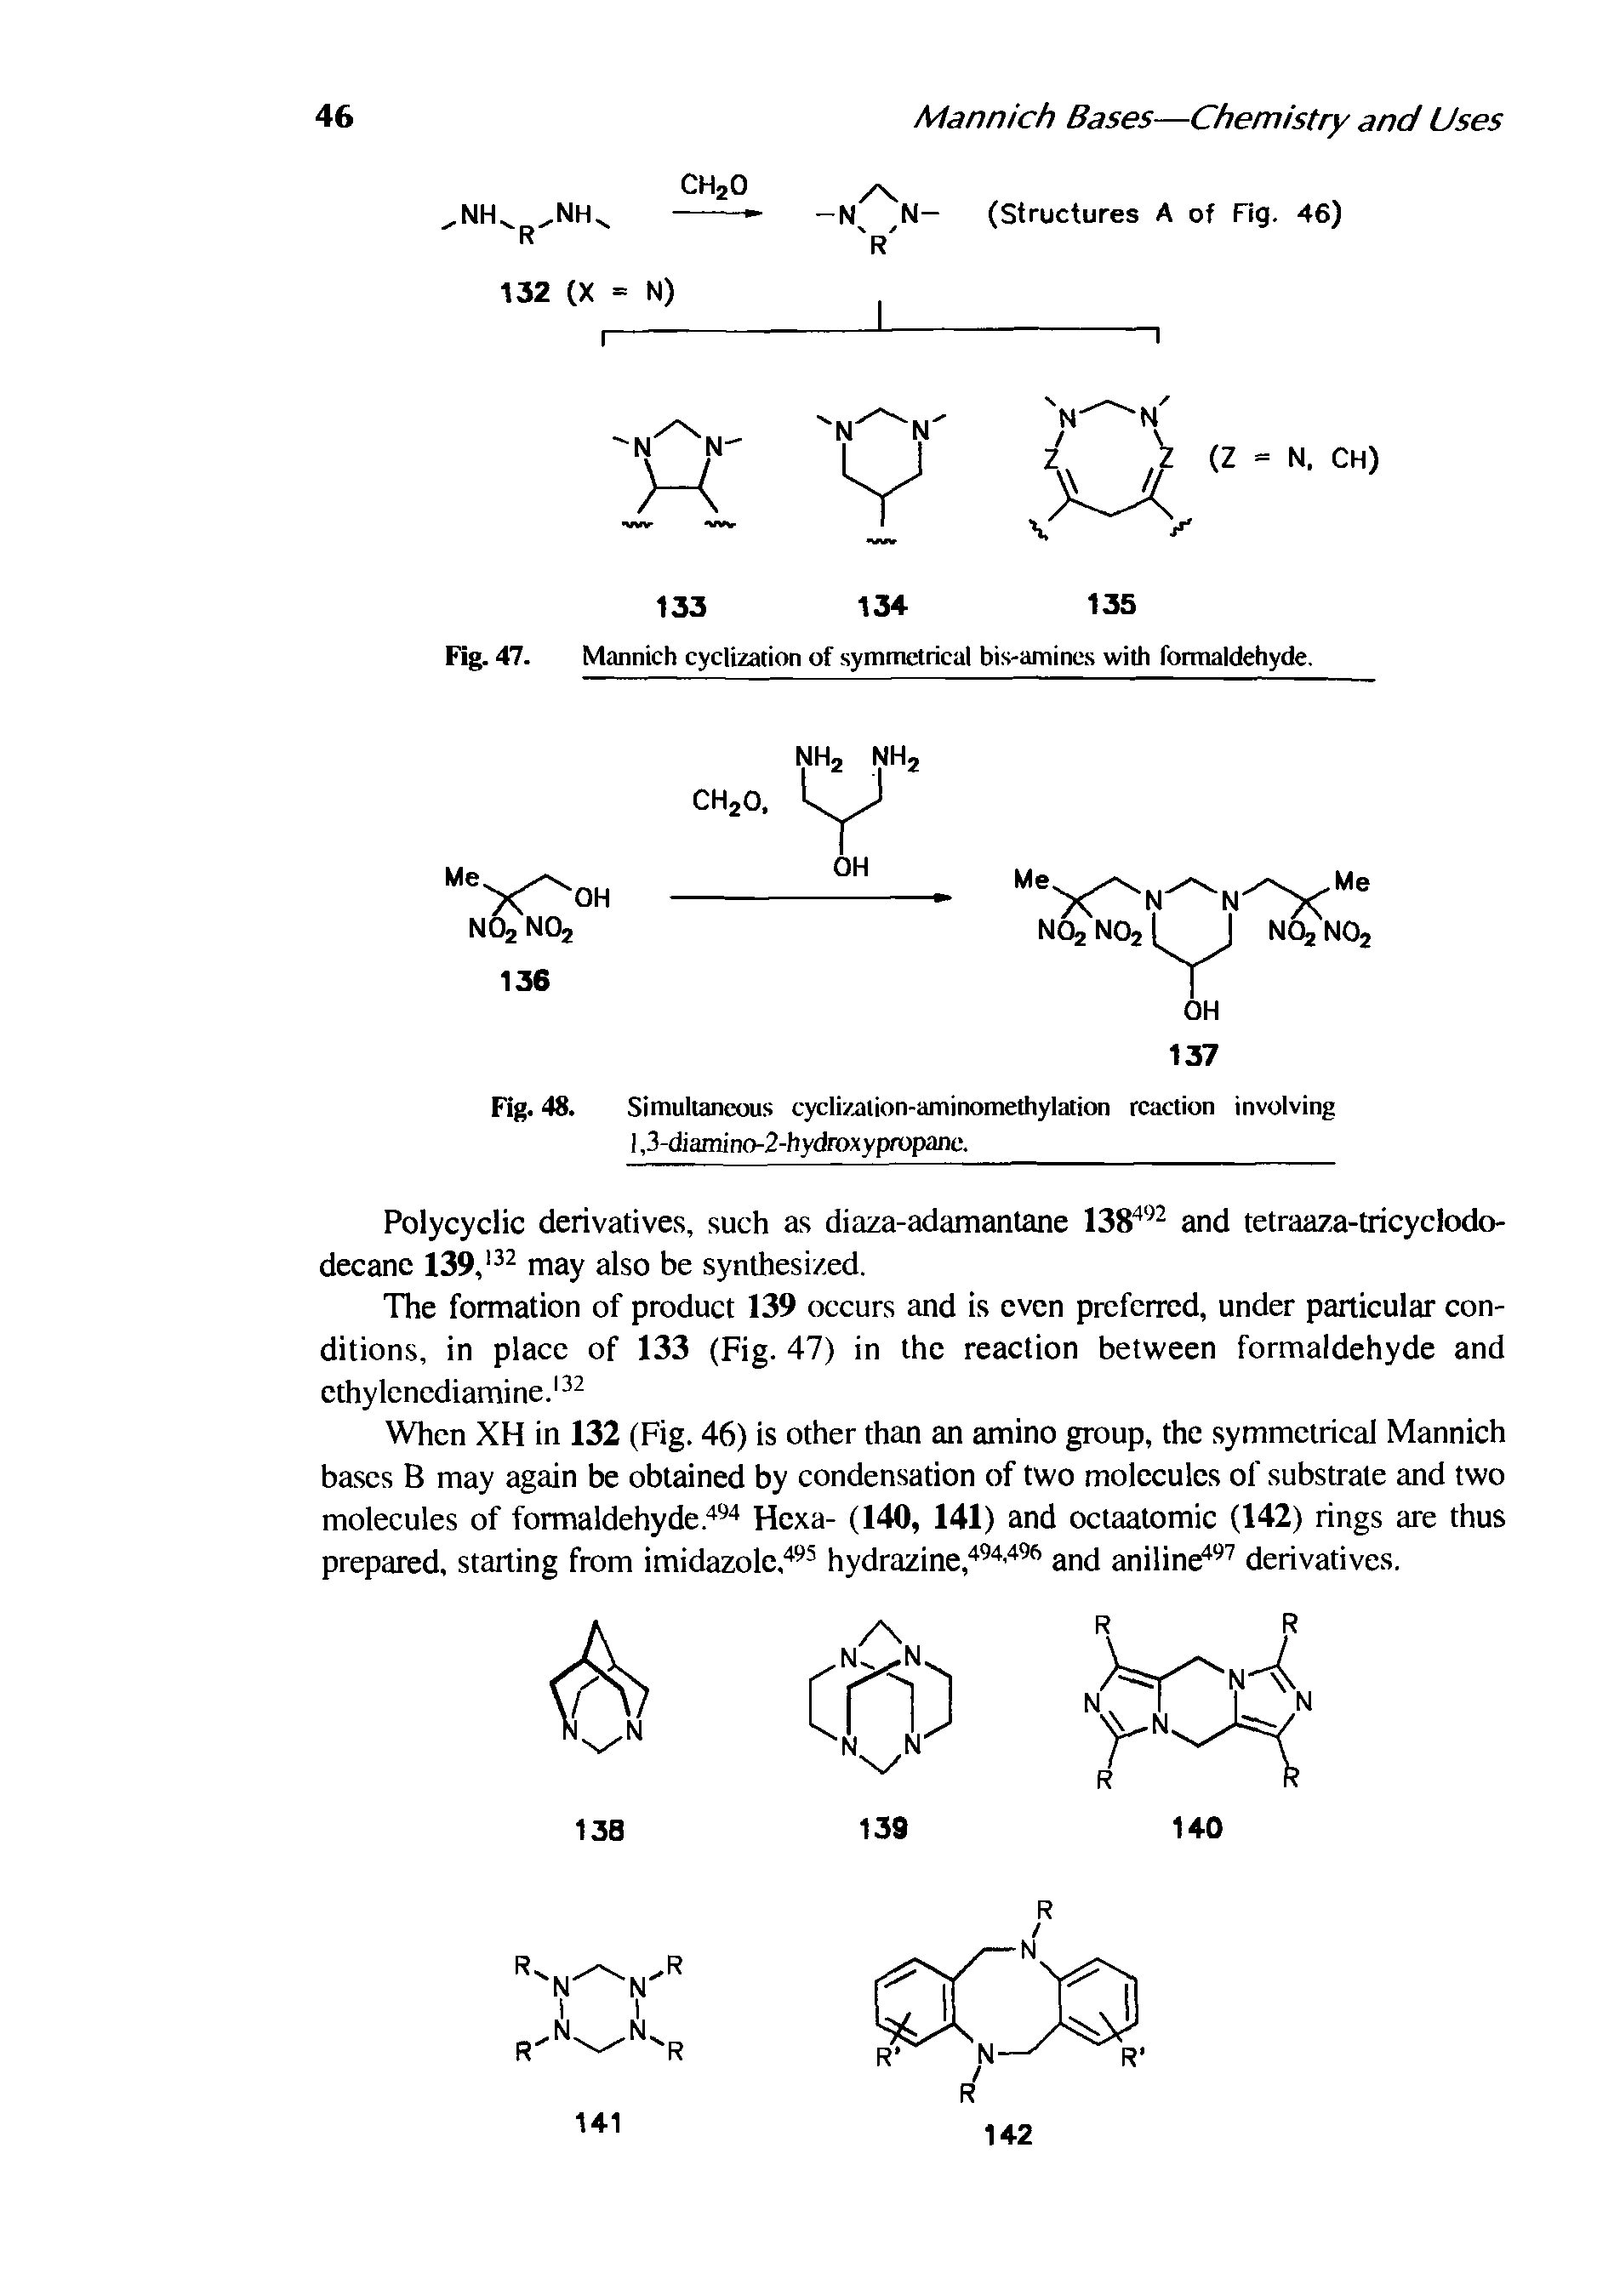 Fig. 47. Mannich cyclization of symmetrical bis-amincs with formaldehyde.